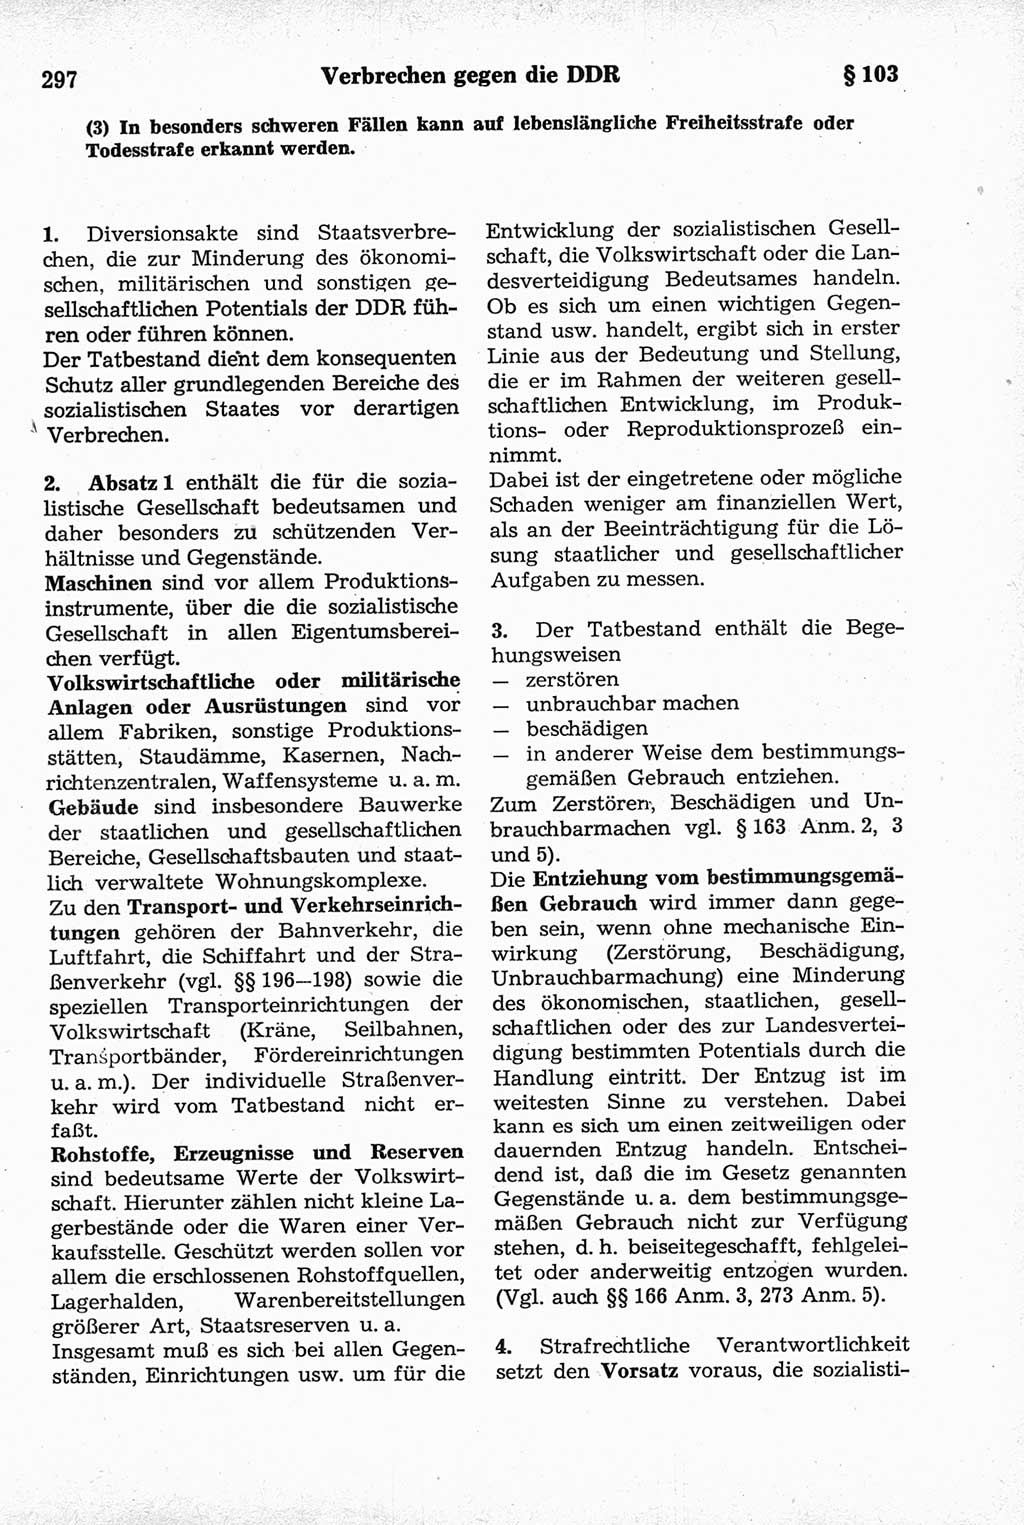 Strafrecht der Deutschen Demokratischen Republik (DDR), Kommentar zum Strafgesetzbuch (StGB) 1981, Seite 297 (Strafr. DDR Komm. StGB 1981, S. 297)